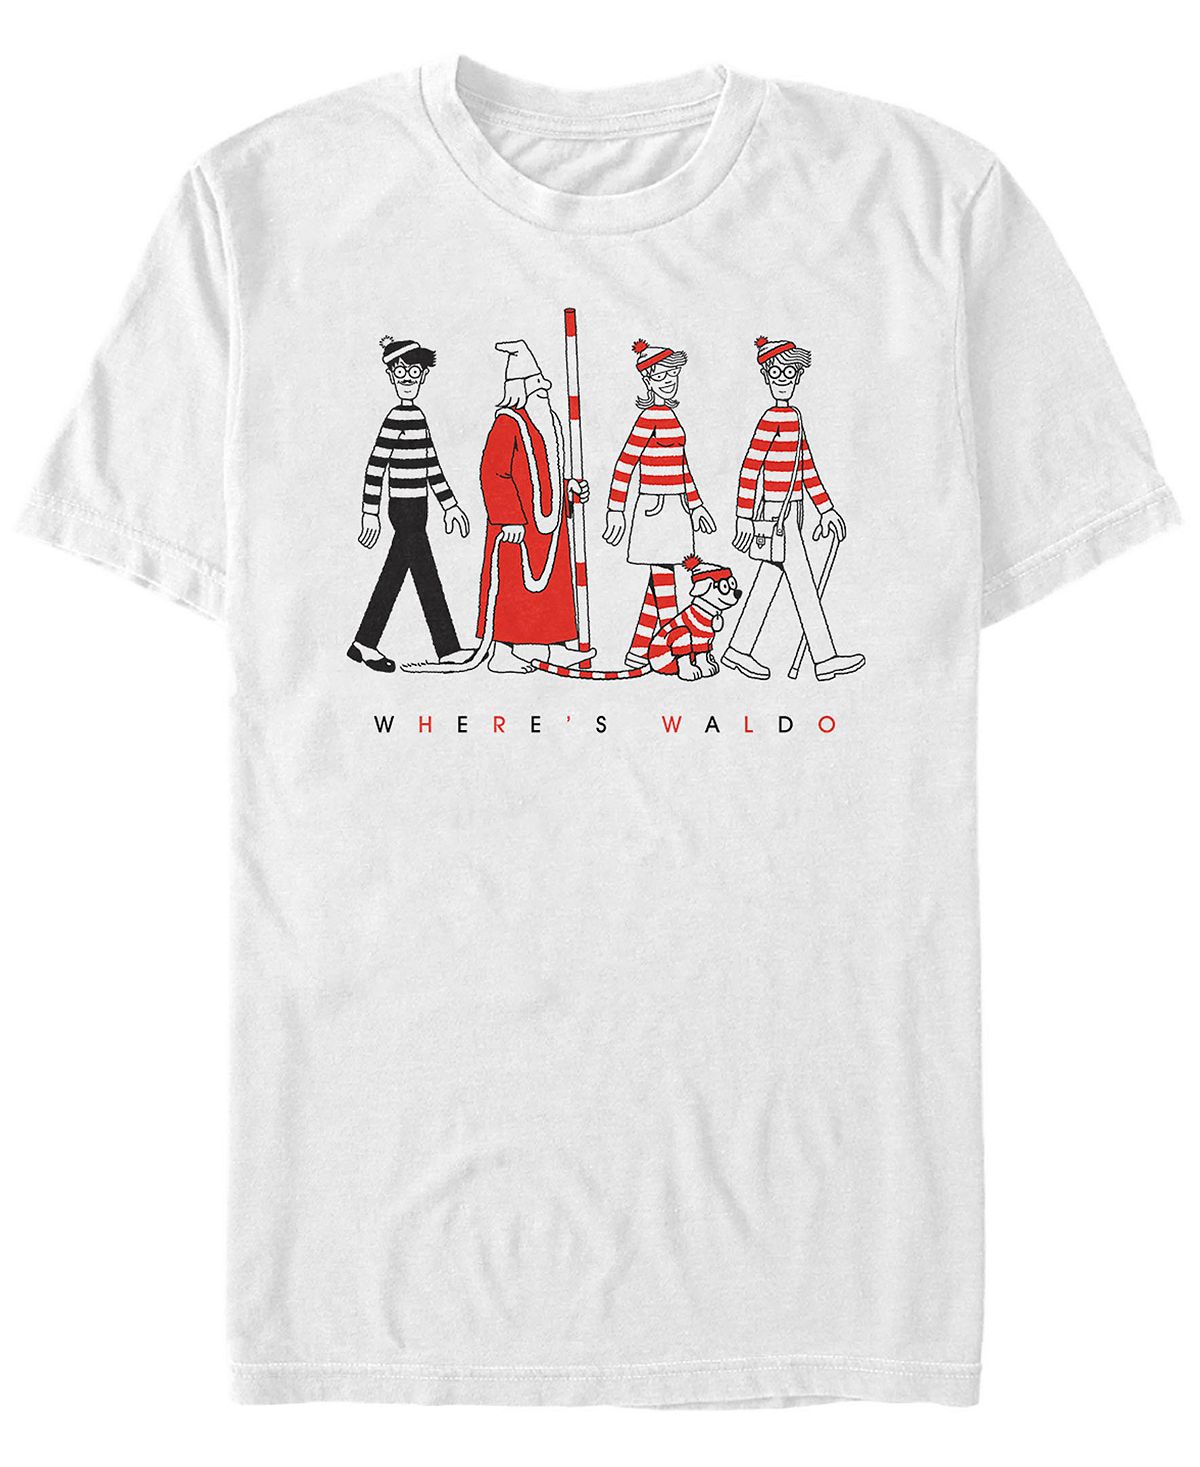 цена Мужская футболка с коротким рукавом where's waldo character line up Fifth Sun, белый